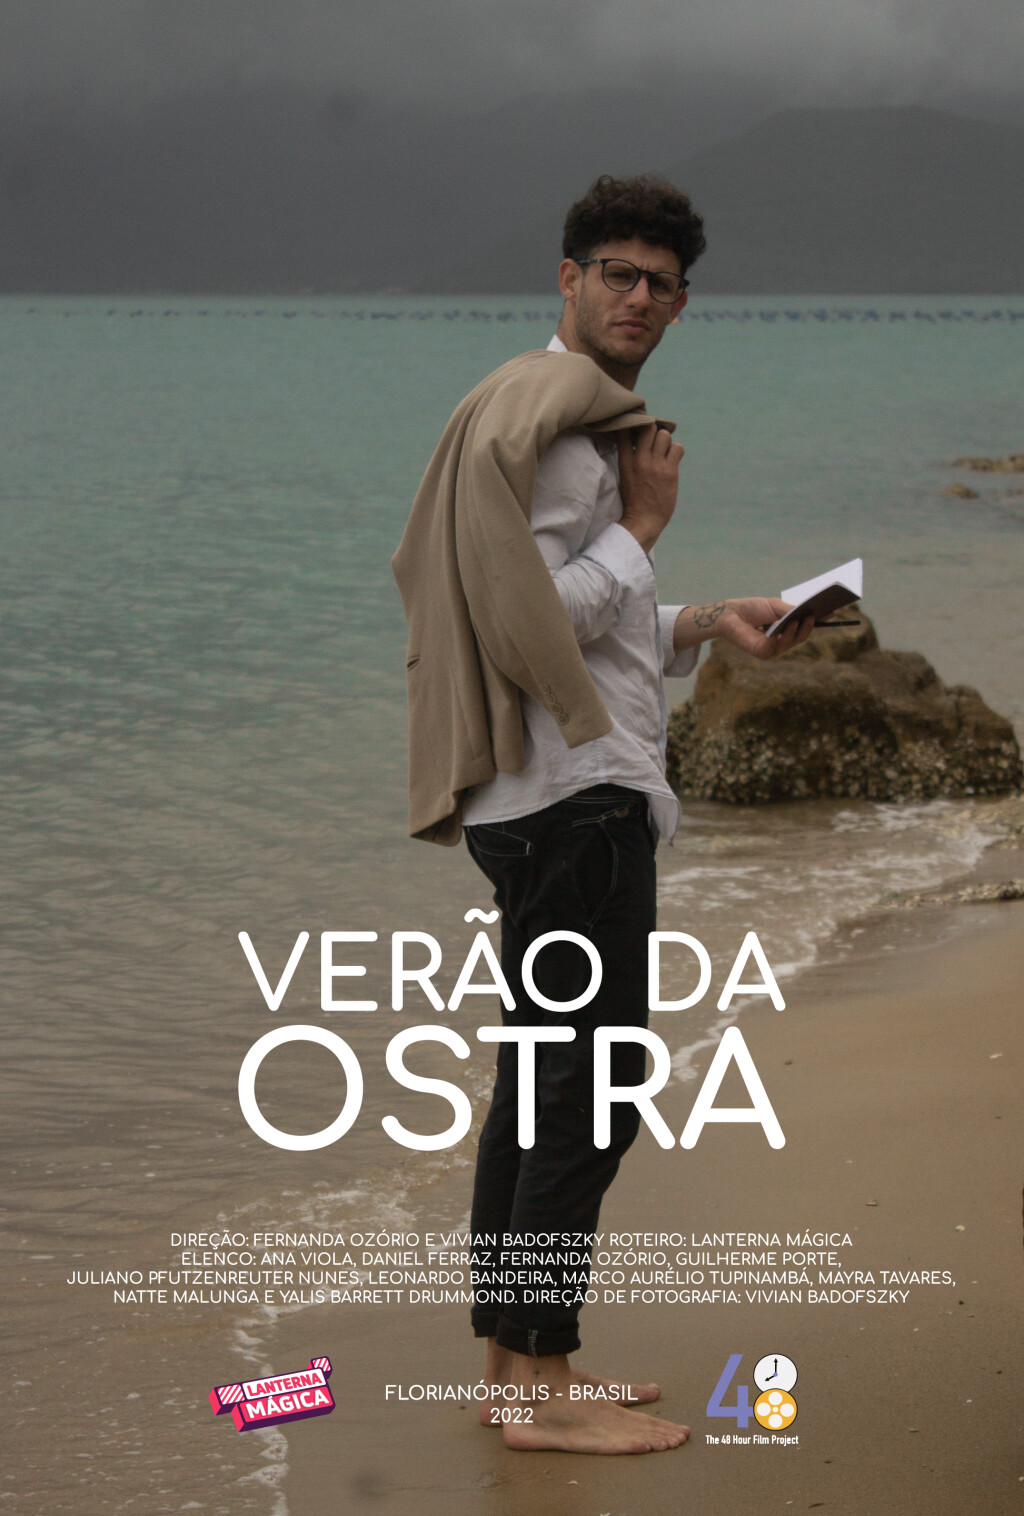 Filmposter for Verão da Ostra